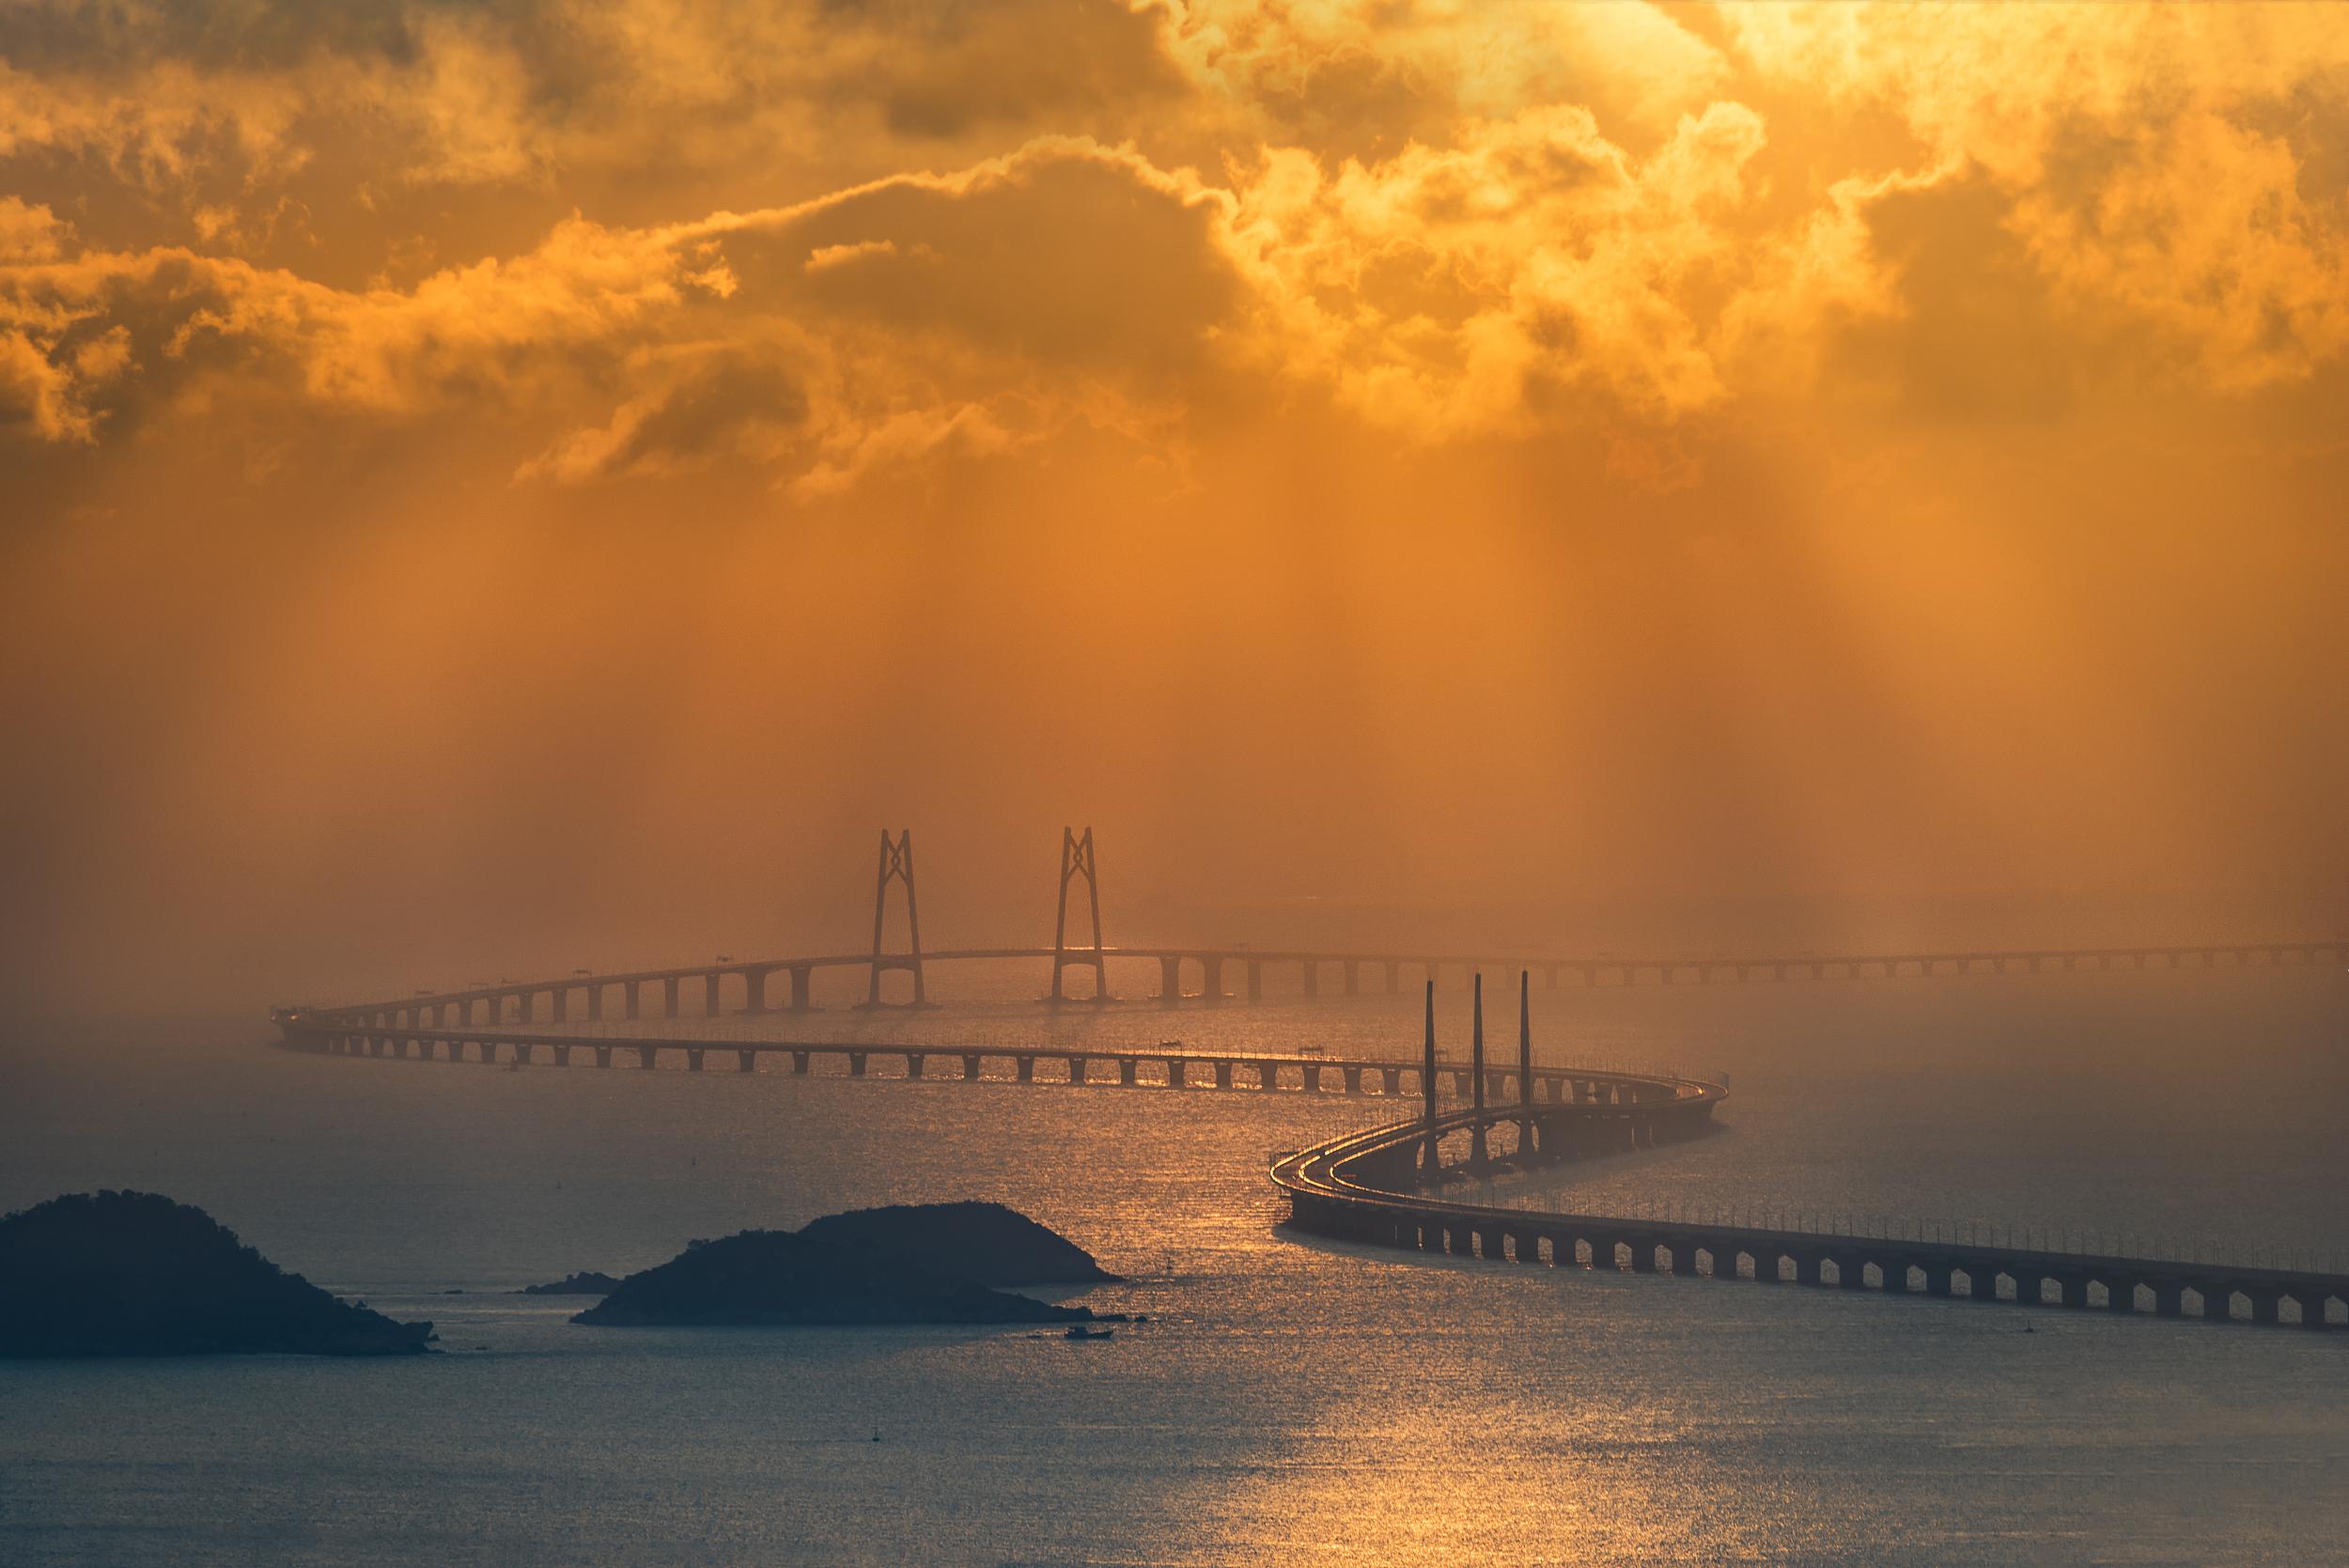 图解港珠澳大桥:世界上最长的跨海桥梁工程